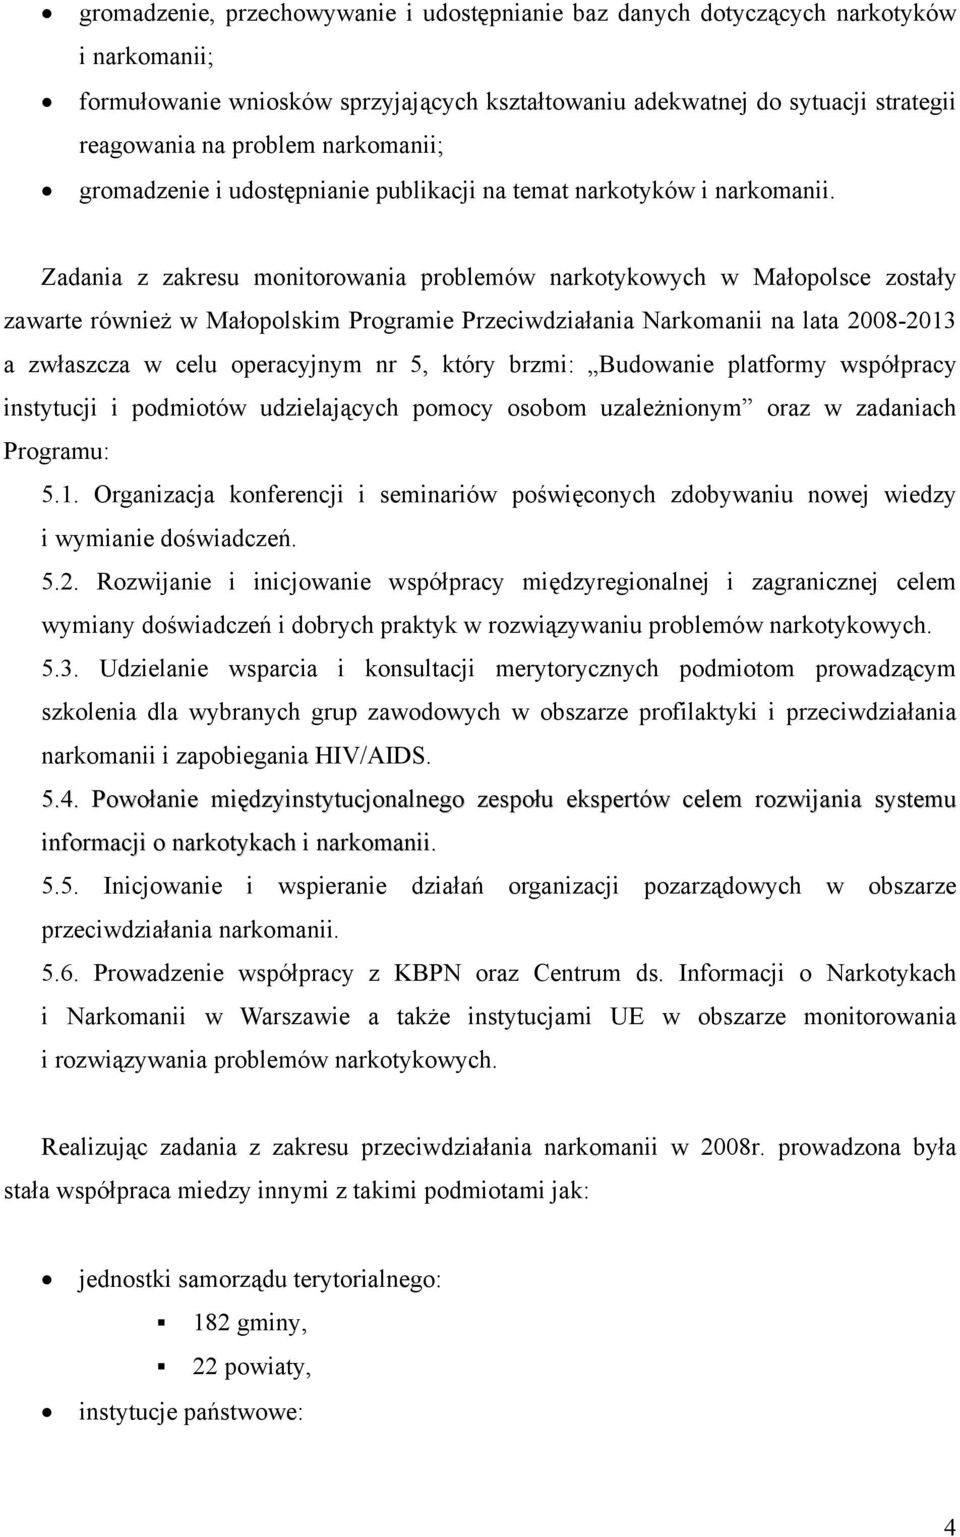 Zadania z zakresu monitorowania problemów narkotykowych w Małopolsce zostały zawarte również w Małopolskim Programie Przeciwdziałania Narkomanii na lata 2008-2013 a zwłaszcza w celu operacyjnym nr 5,